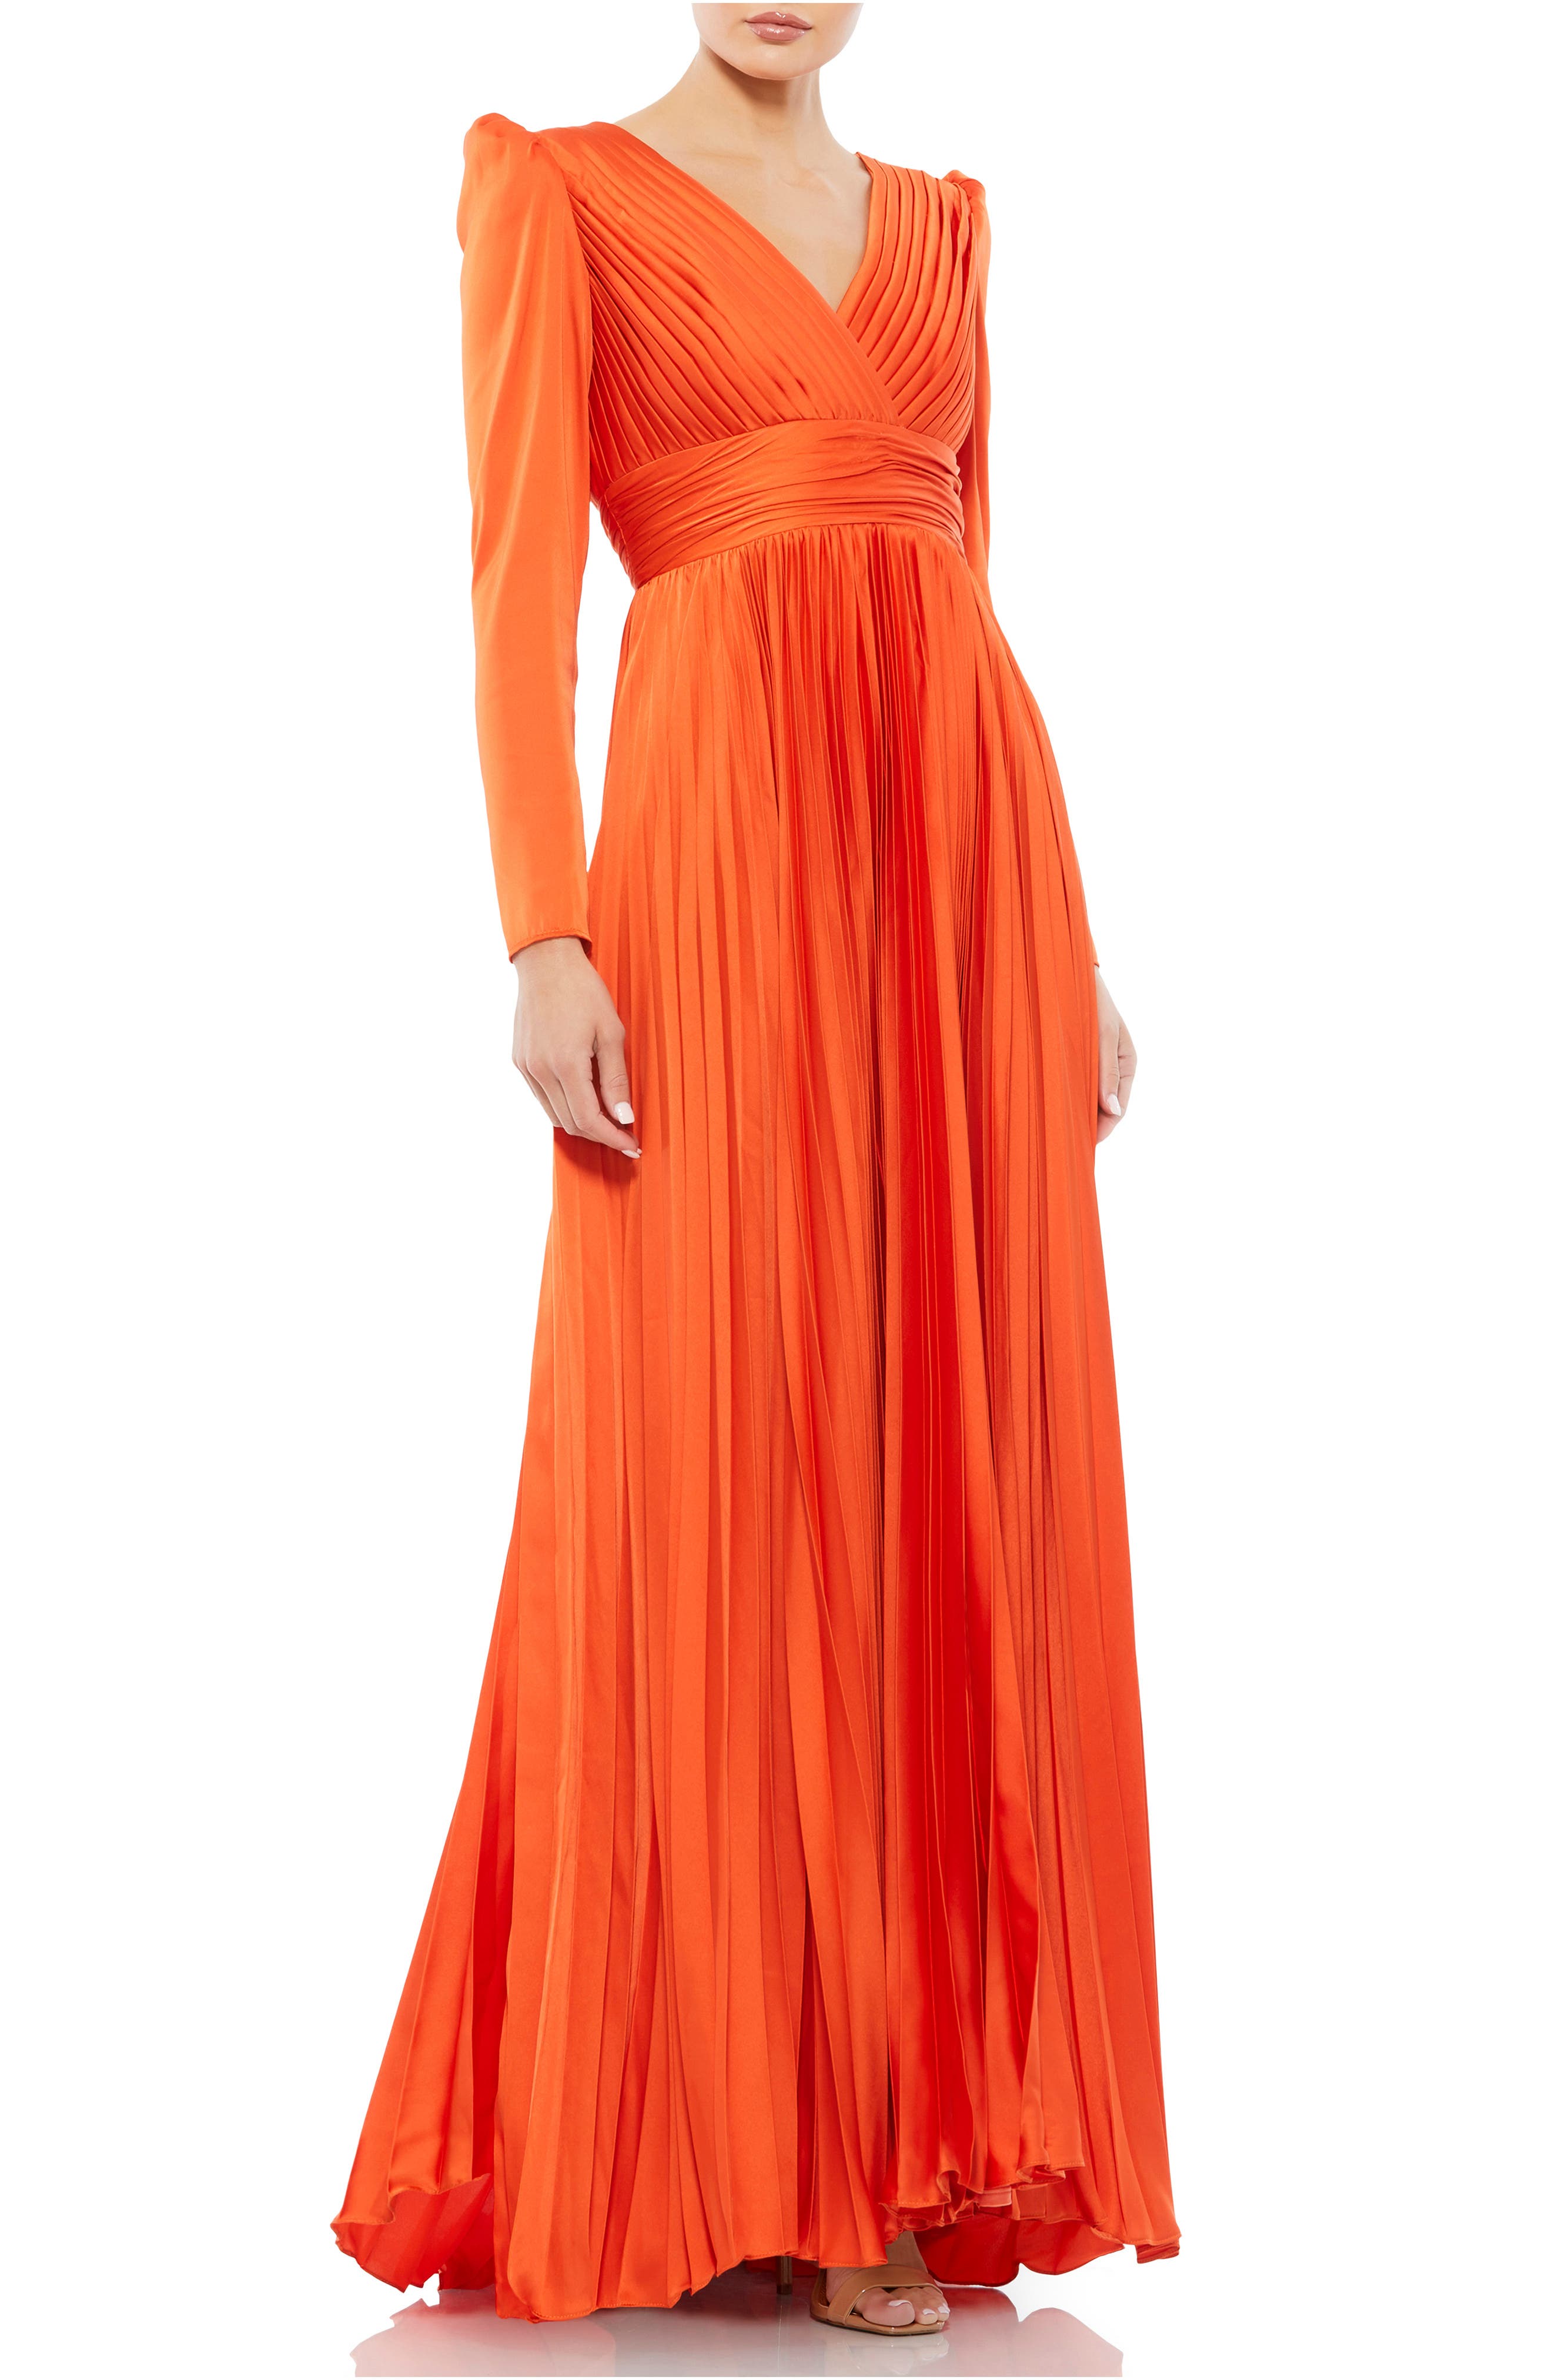 Orange Formal Dresses ☀ Evening Gowns ...